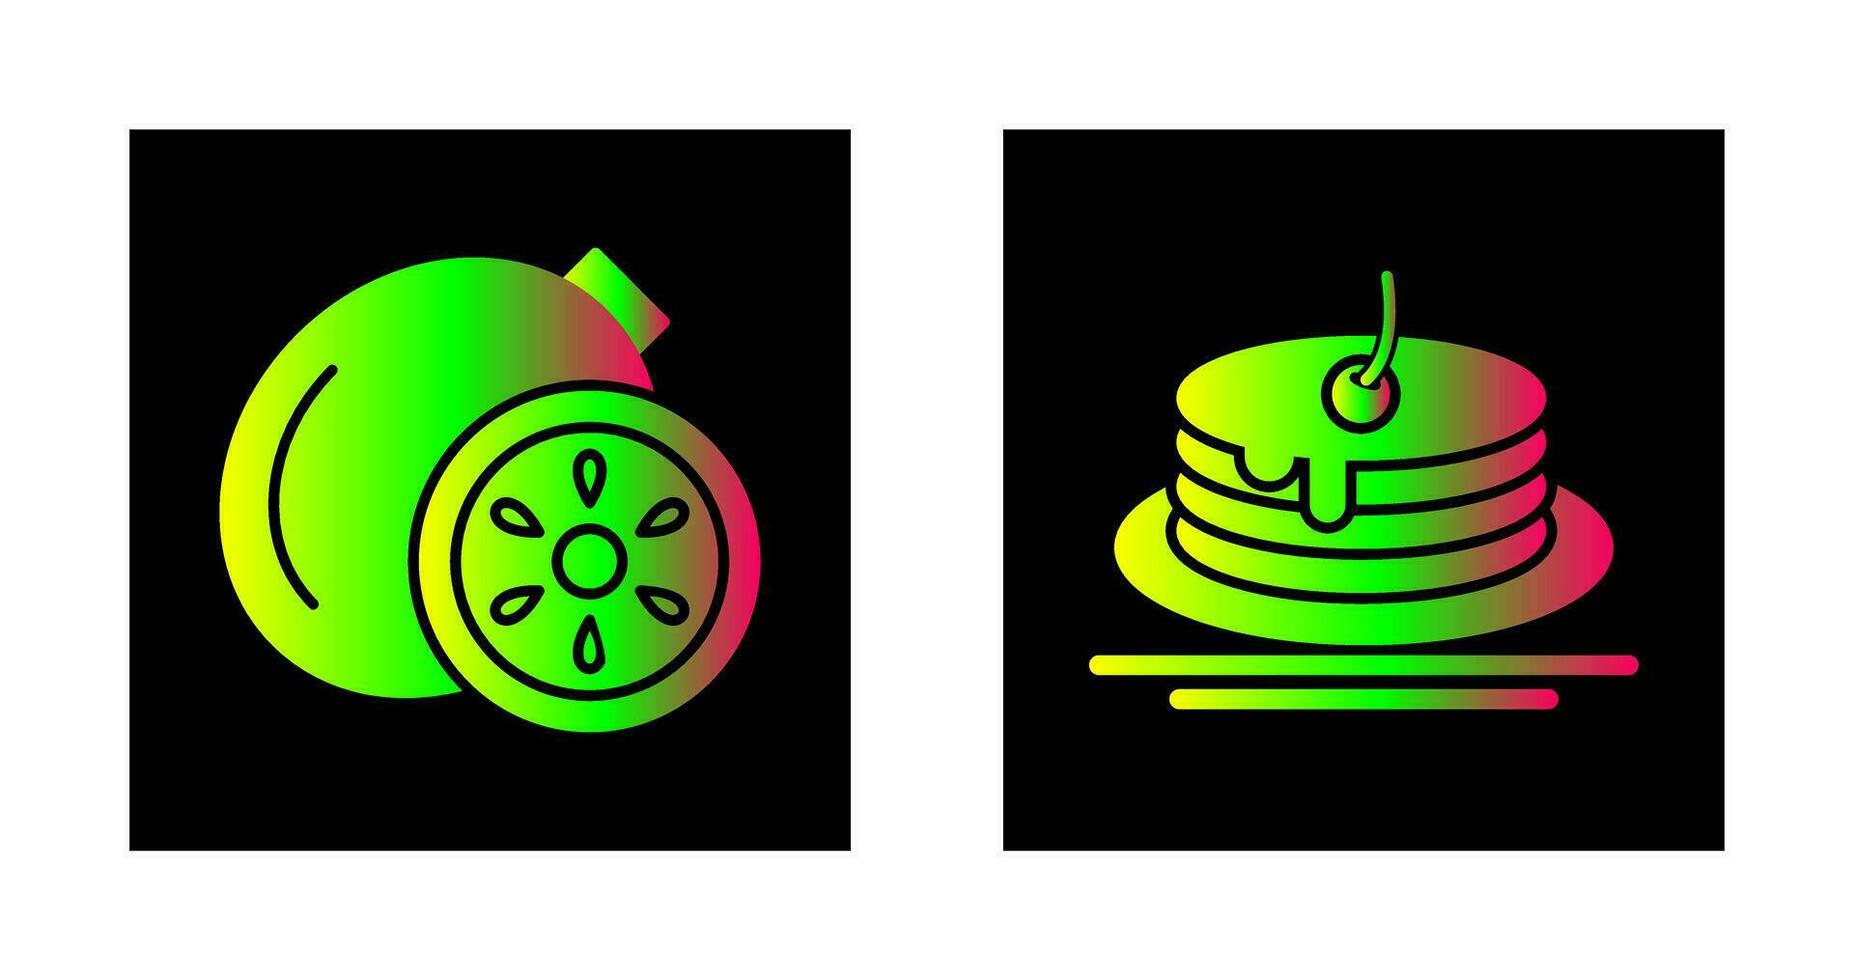 kiwi en pannenkoek icoon vector